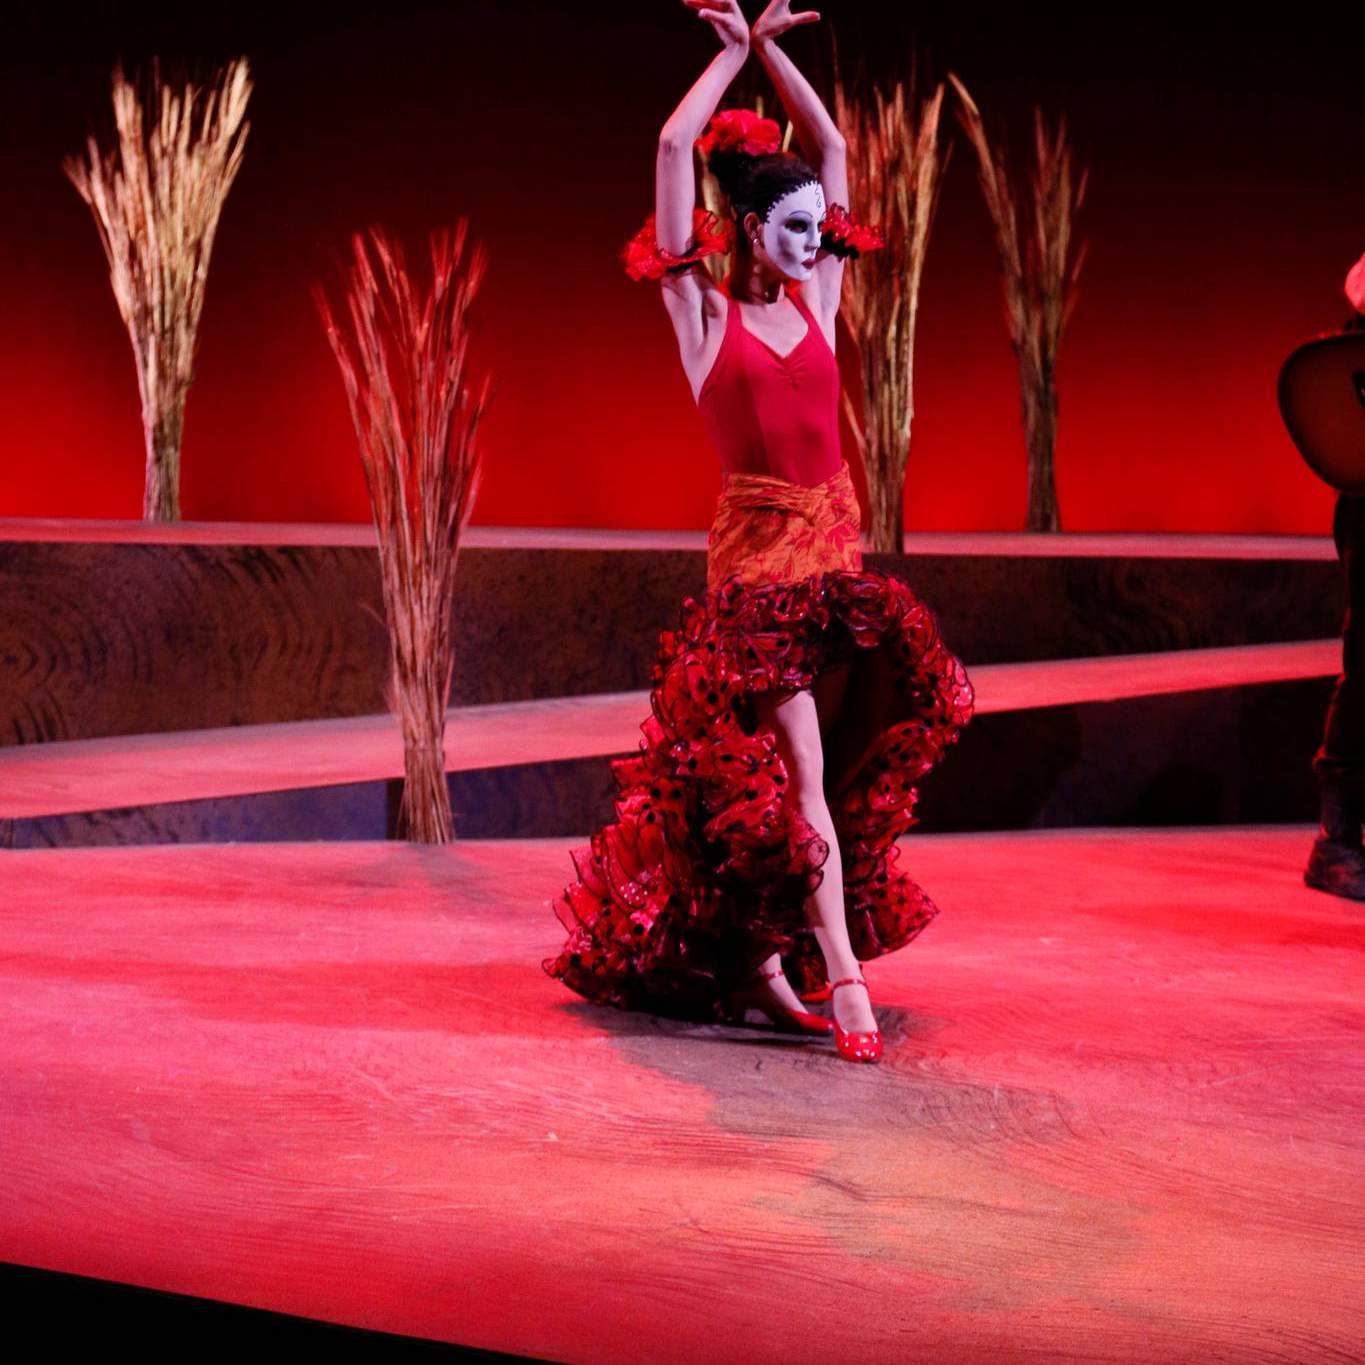 Woman dancing in flamenco dress